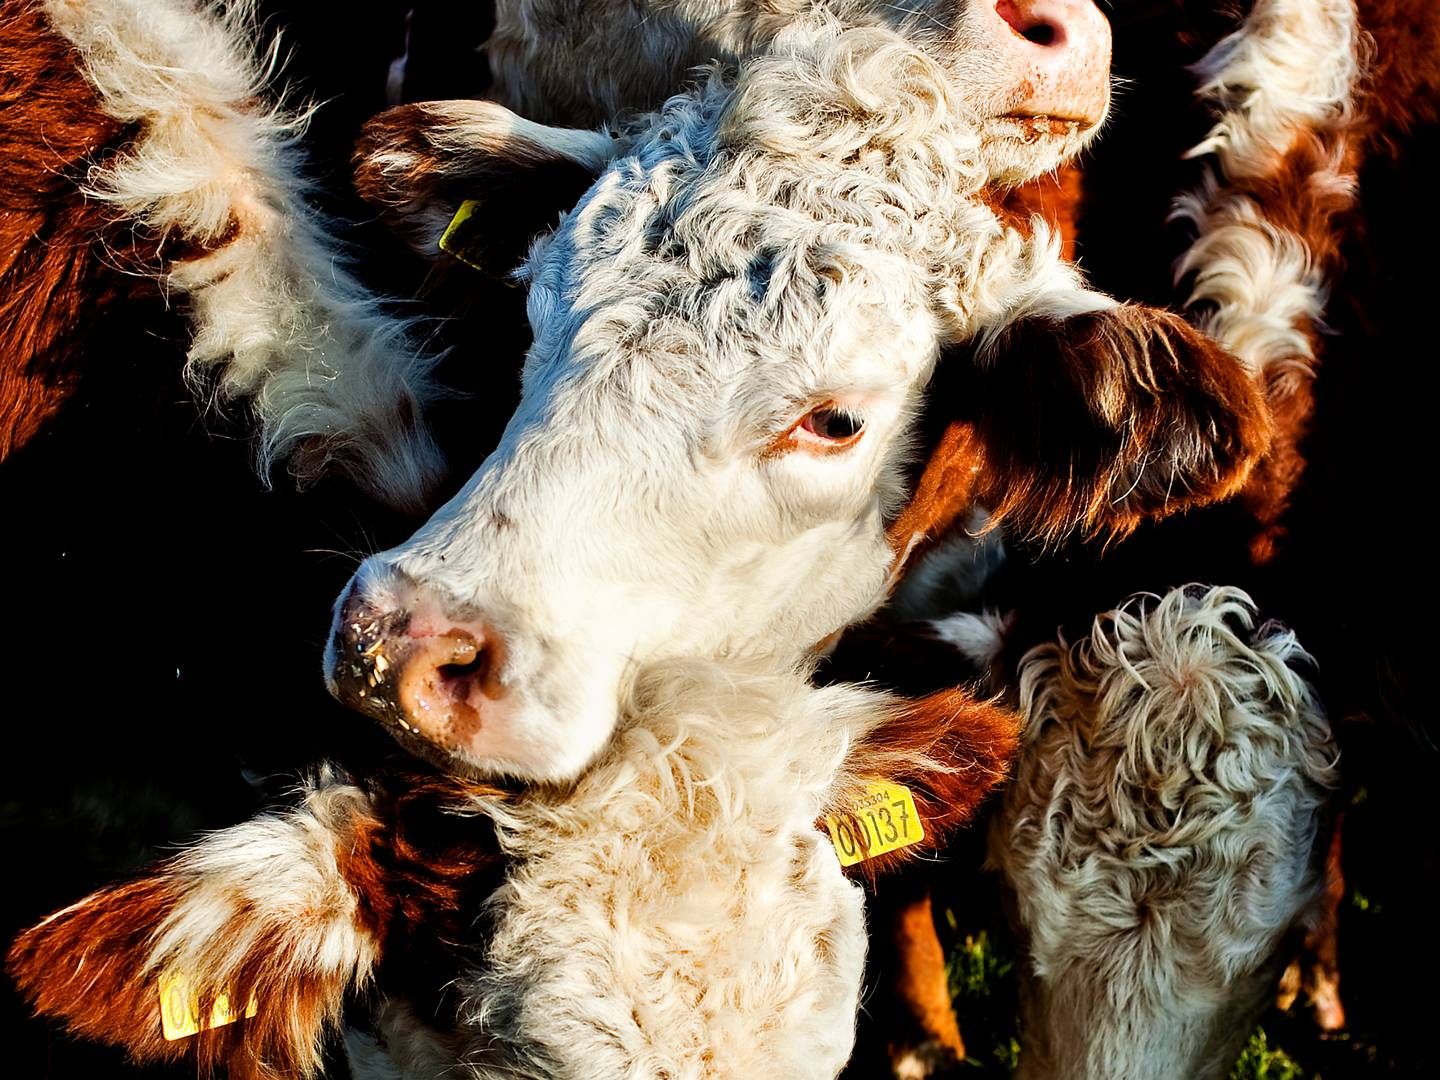 Som følge af tørken er der mindre foder at hente på markerne til landmændenes dyrehold, påpeger formand. | Foto: Mathias Christensen/Politiken